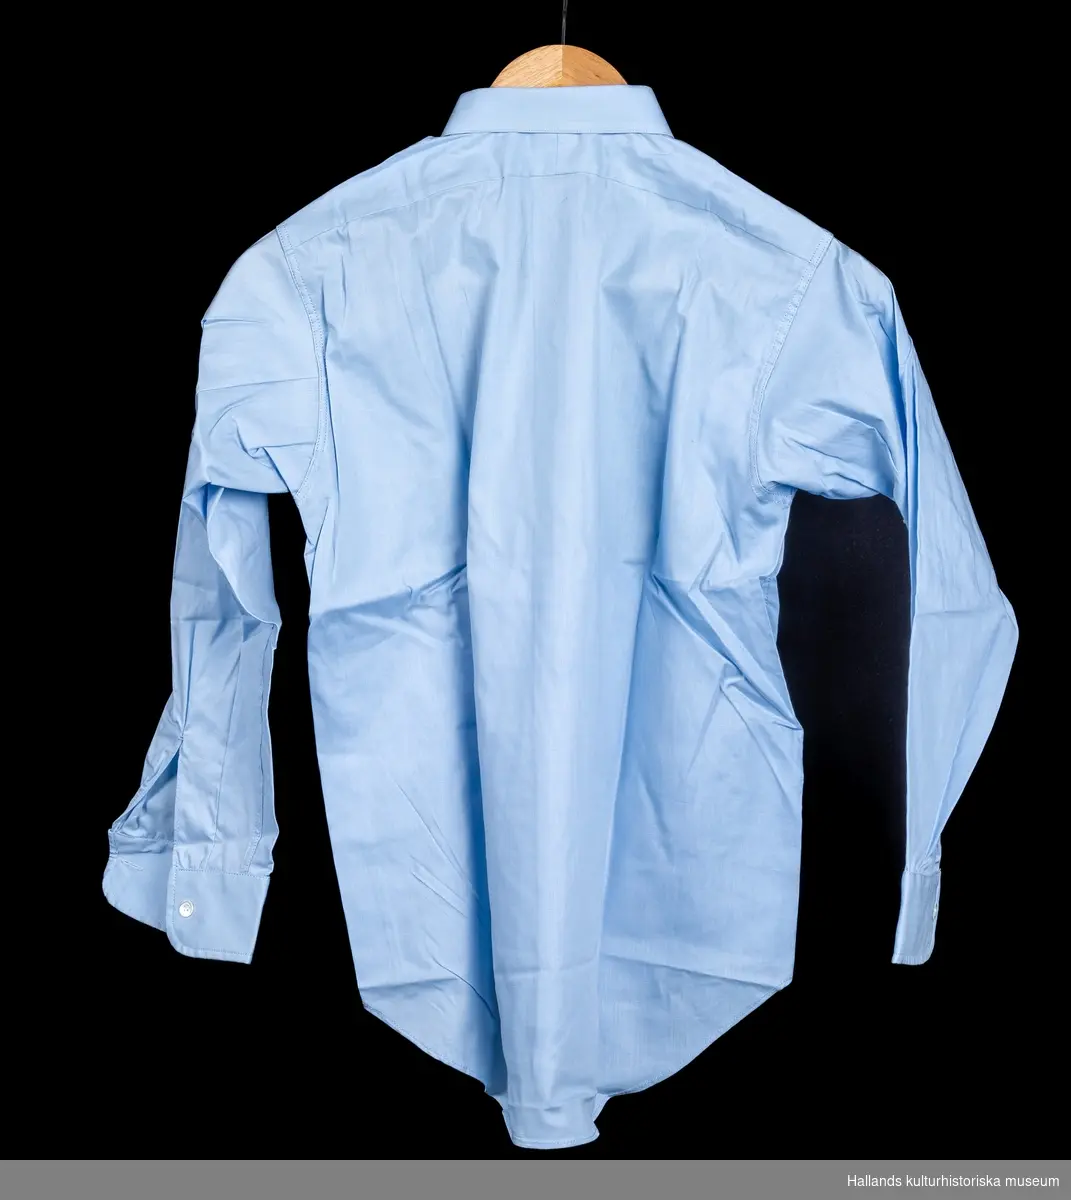 Skjorta avsedd för pojke. a) Ljusblå bomull. Rak modell med knäppning fram. Märkt: "Prins Bore storlek 31. Kokas ej, stärkes eller strykes fuktig". b) Beige bomull. Rak modell med knäppning fram. Märkt: "Prins Bore storlek 31, kokas ej, stärkes eller strykes fuktig". c) Stödkartong av papp, överkroppsformad. Boreskjortan med bättre passform.d) Stödkartong av papp, rektangulär form med upphöjt stöd för kragen. e) Skjortkartong med lock, rektangulär form. Märkt: "Aktiebolaget Melka skjortor". a) Längd 66 cm. Bredd 38 cm. b) Längd 66 cm. Bredd 38cm. c) Längd 29,5 cm. Bredd 21 cm.d) Längd 29,5 cm. Bredd 20,7 cm.e) Längd 34 cm. Bredd 22,5 cm.